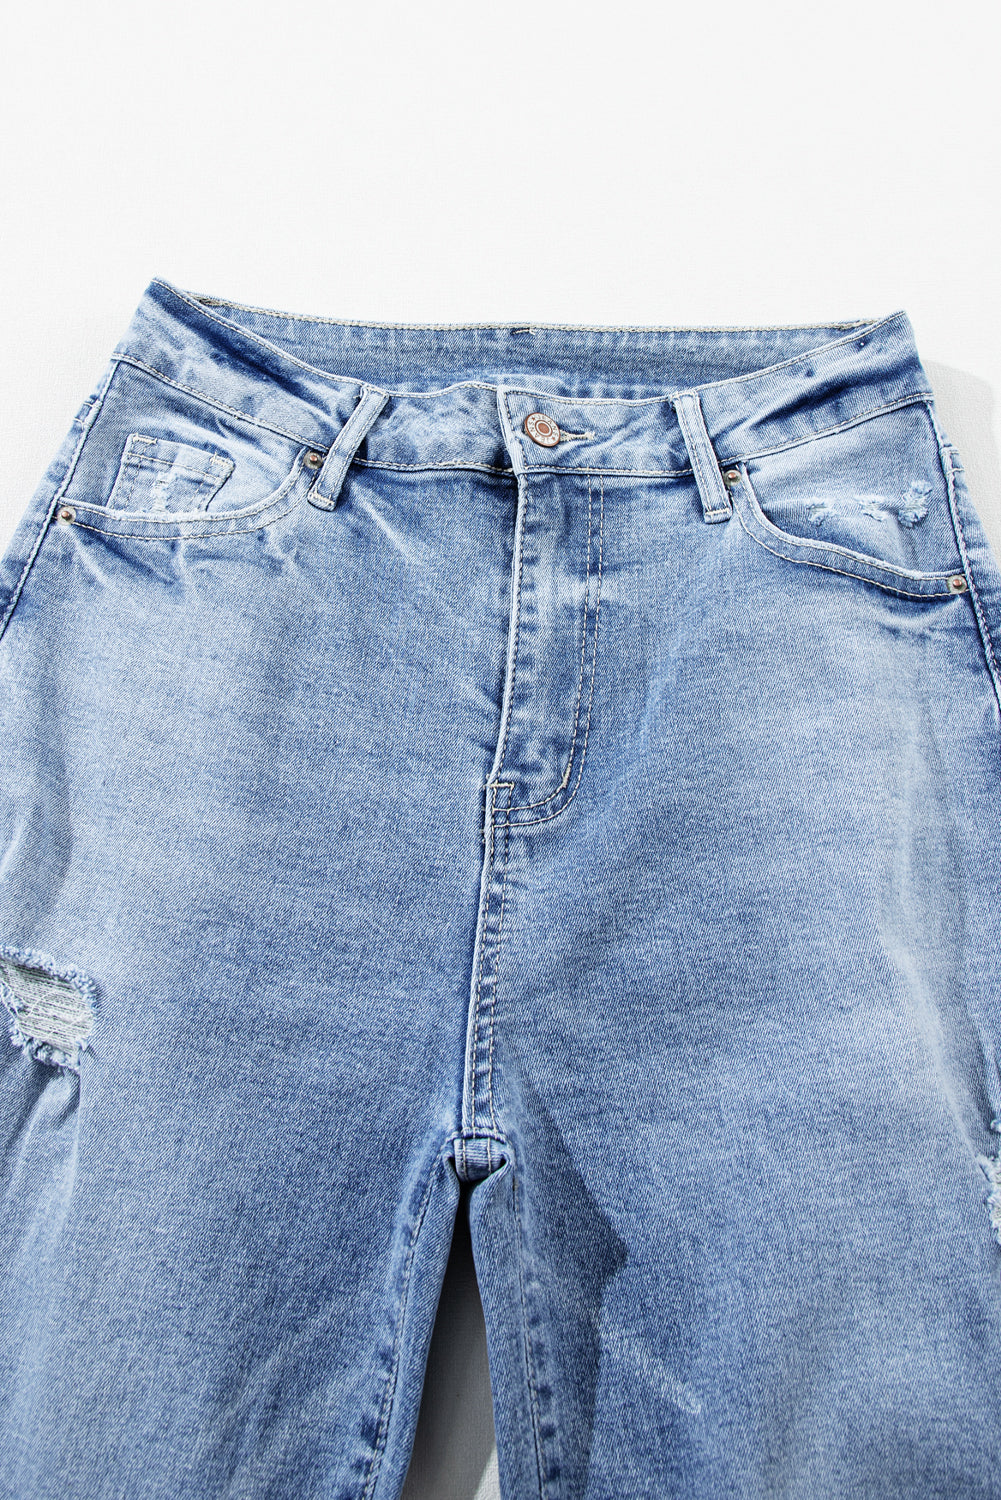 Hellblaue Distressed-Jeans mit geradem Bein und hohem Bund